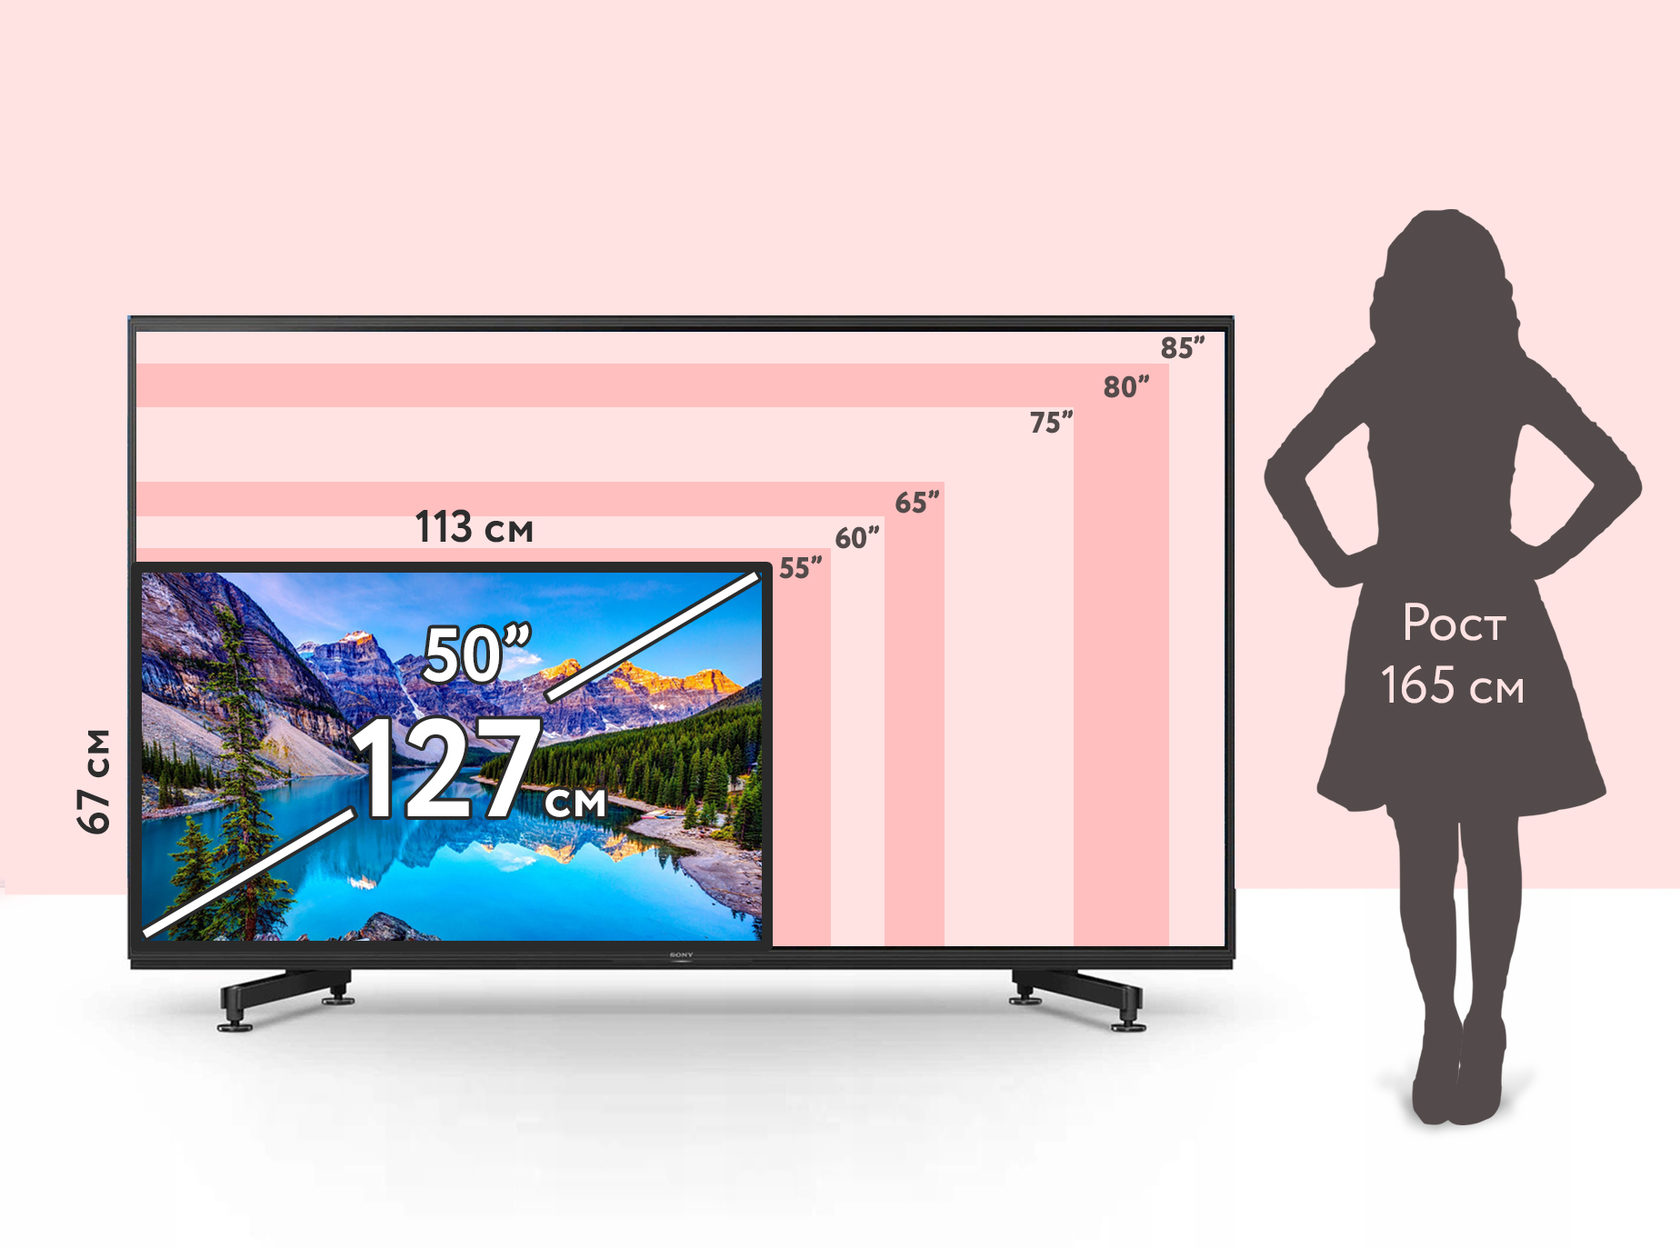 Телевизор 65 какие размеры. Плазменная панель 107 дюймов размер. Габариты телевизора LG 50 дюймов. Плазма 80 дюймов Размеры. Габариты телевизора 50 дюймов.